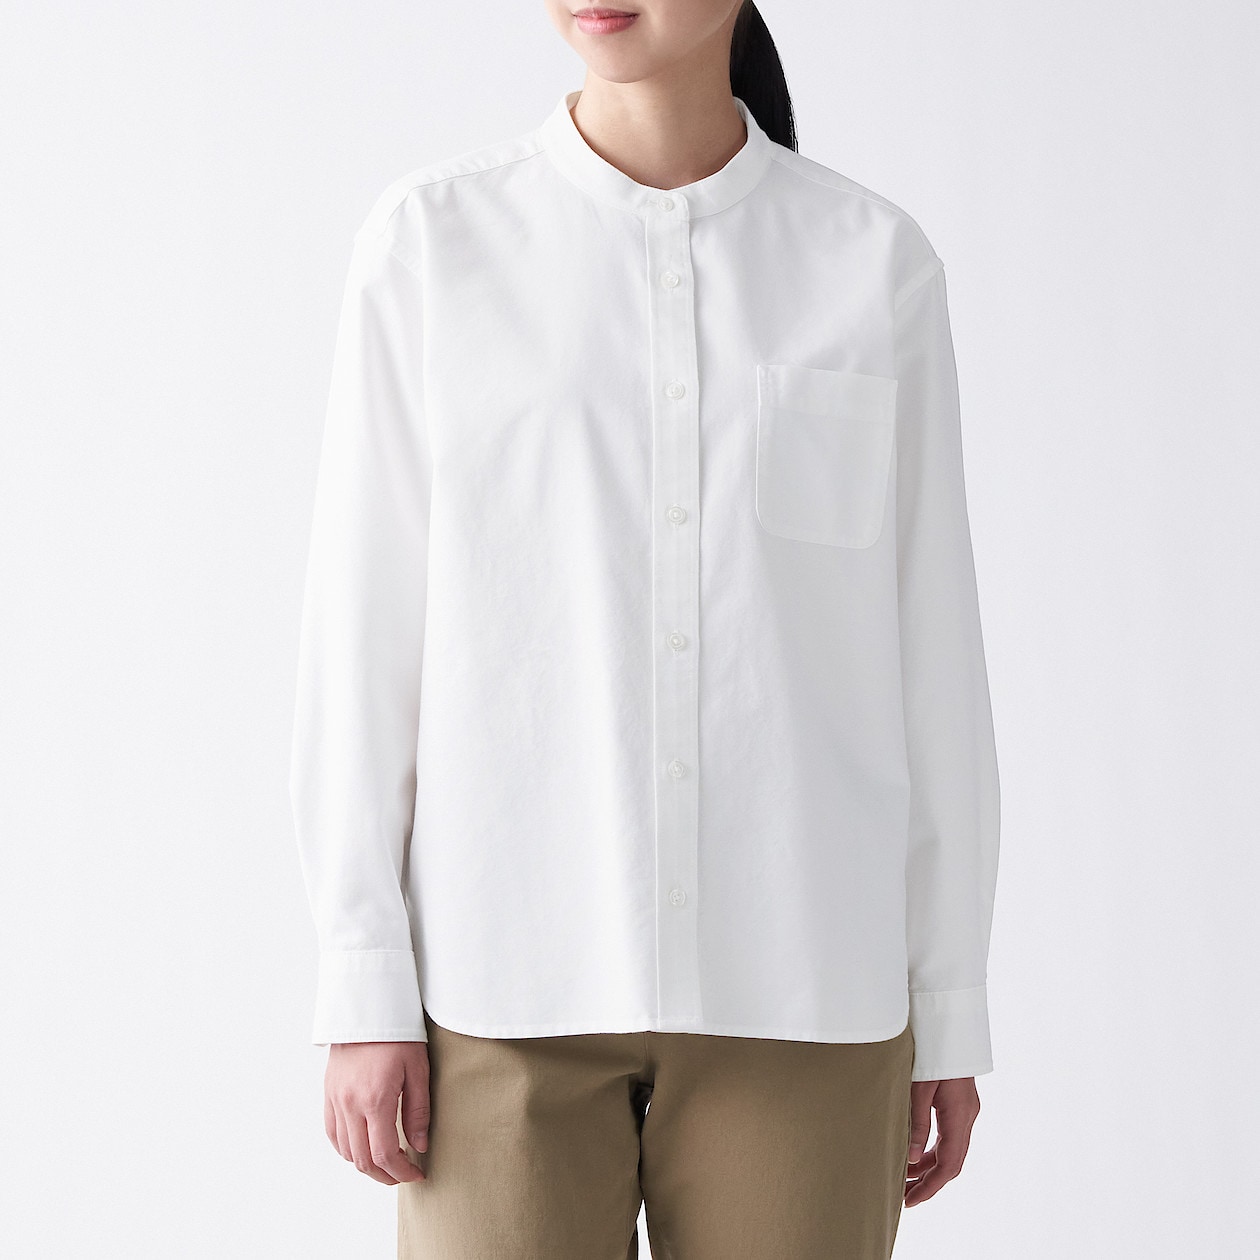 洗いざらしオックススタンドカラーシャツ 婦人ｘｓ 白 シャツ ブラウス 長袖 七分袖 婦人 レディース 通販 無印良品